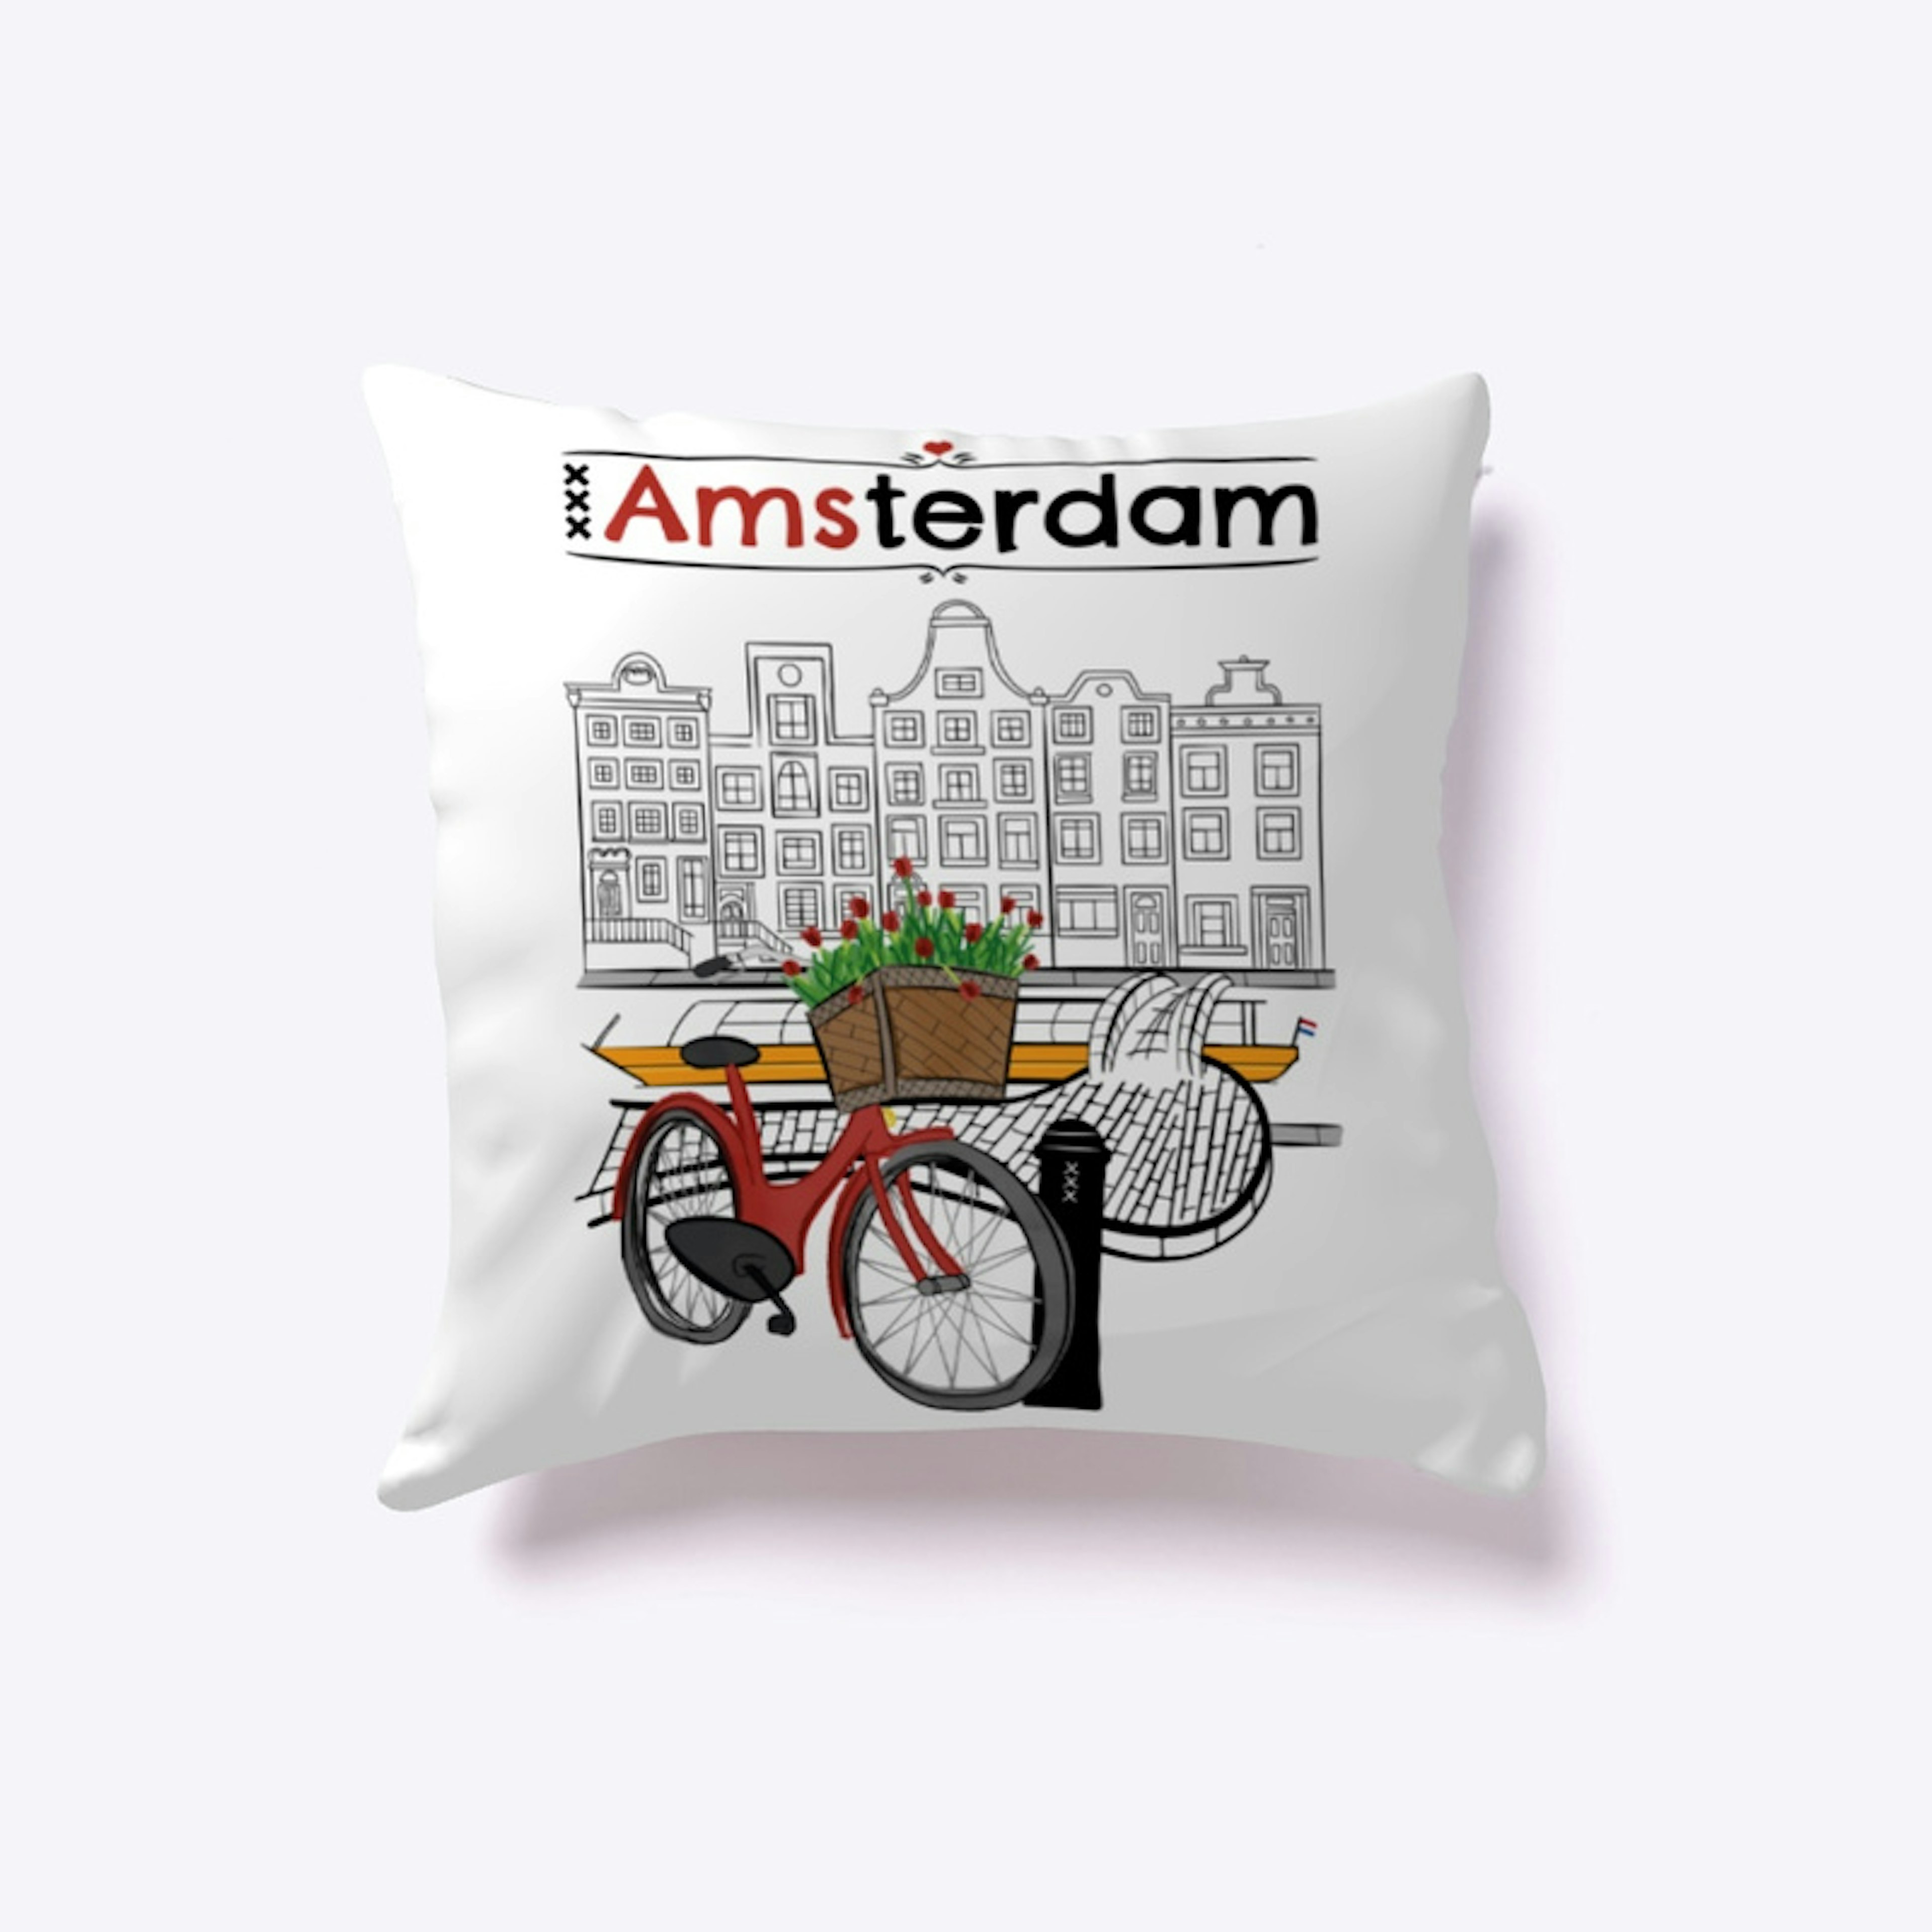 Love Amsterdam! #Holanda